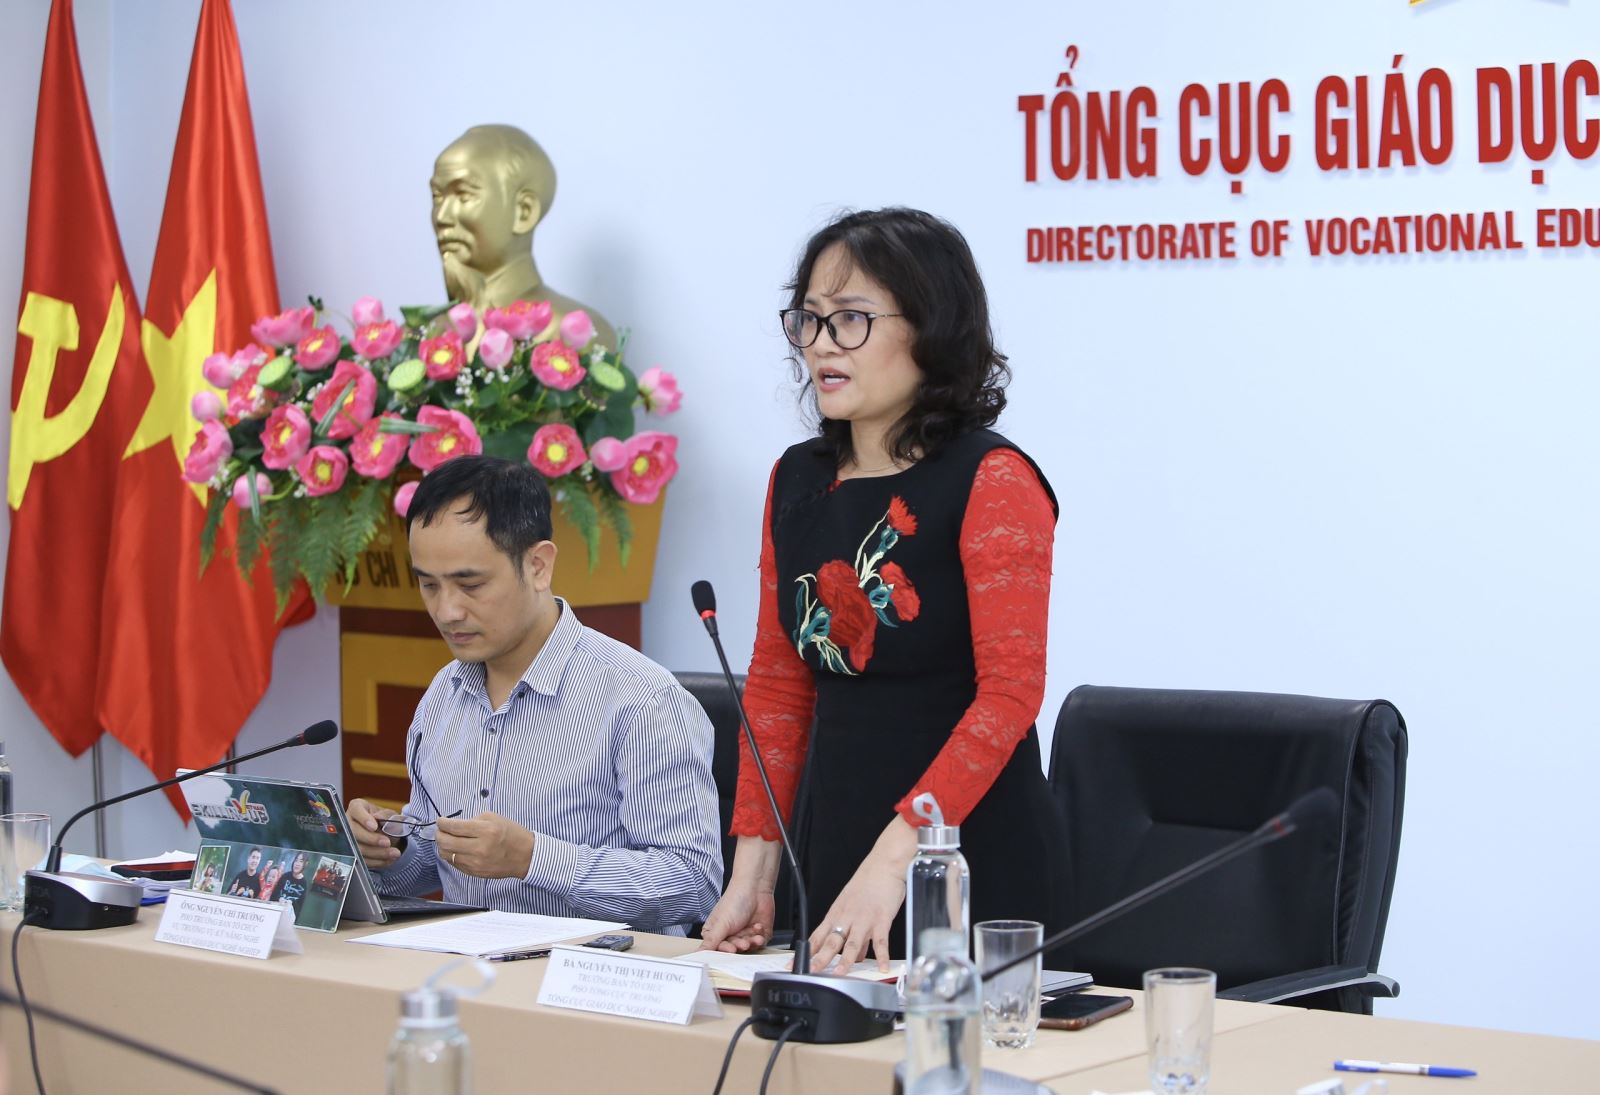 Phó tổng Cục trưởng Tổng Cục Giáo dục nghề nghiệp, TS. Nguyễn Thị Việt Hương trả lời báo chí tại cuộc họp.